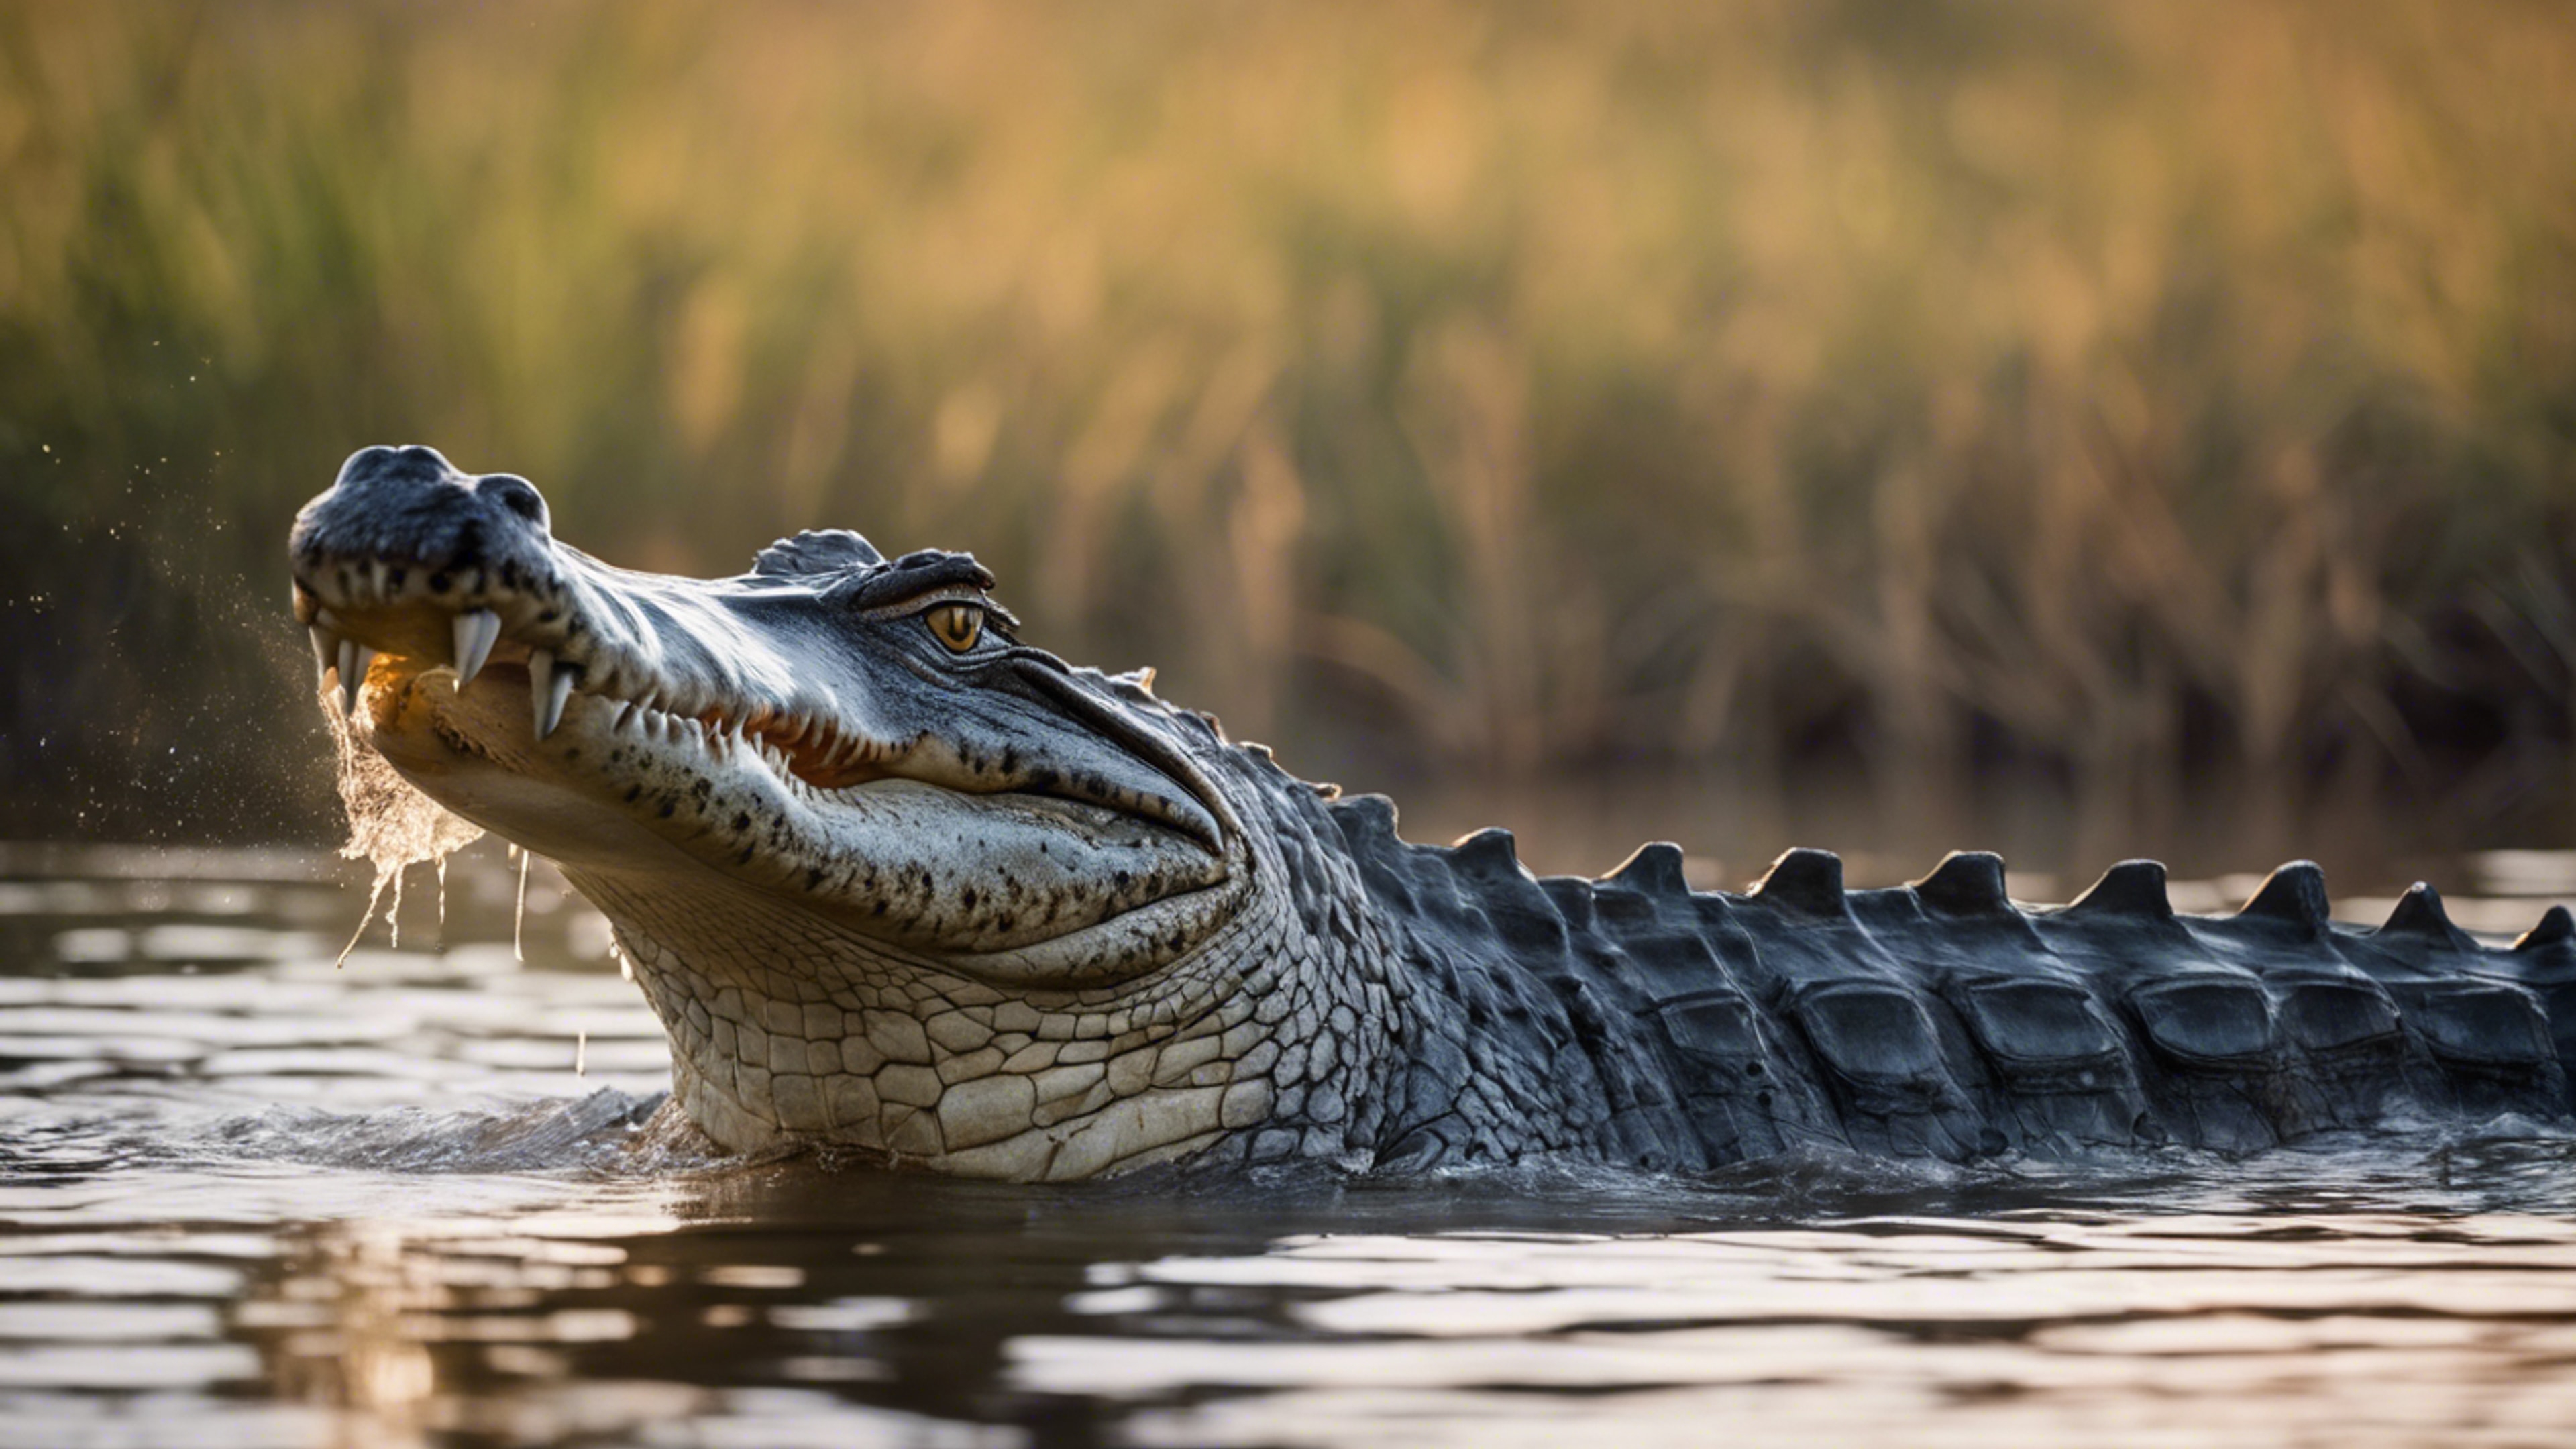 A glorious scene of a crocodile in the heart of the Okavango Delta. Fondo de pantalla[926204686e5b483ca4a6]